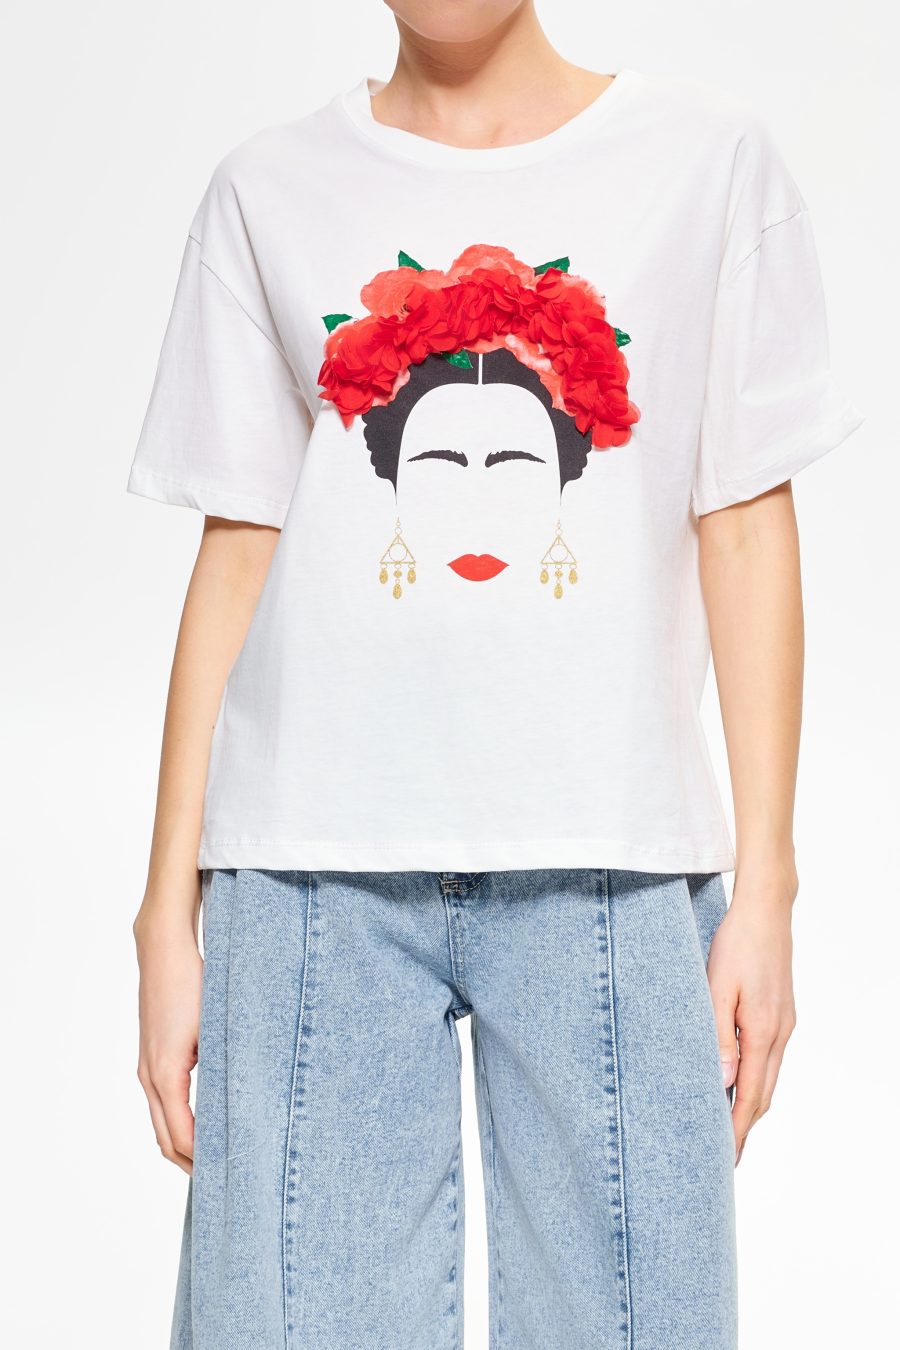 t-shirt-frida-kahlo (1)